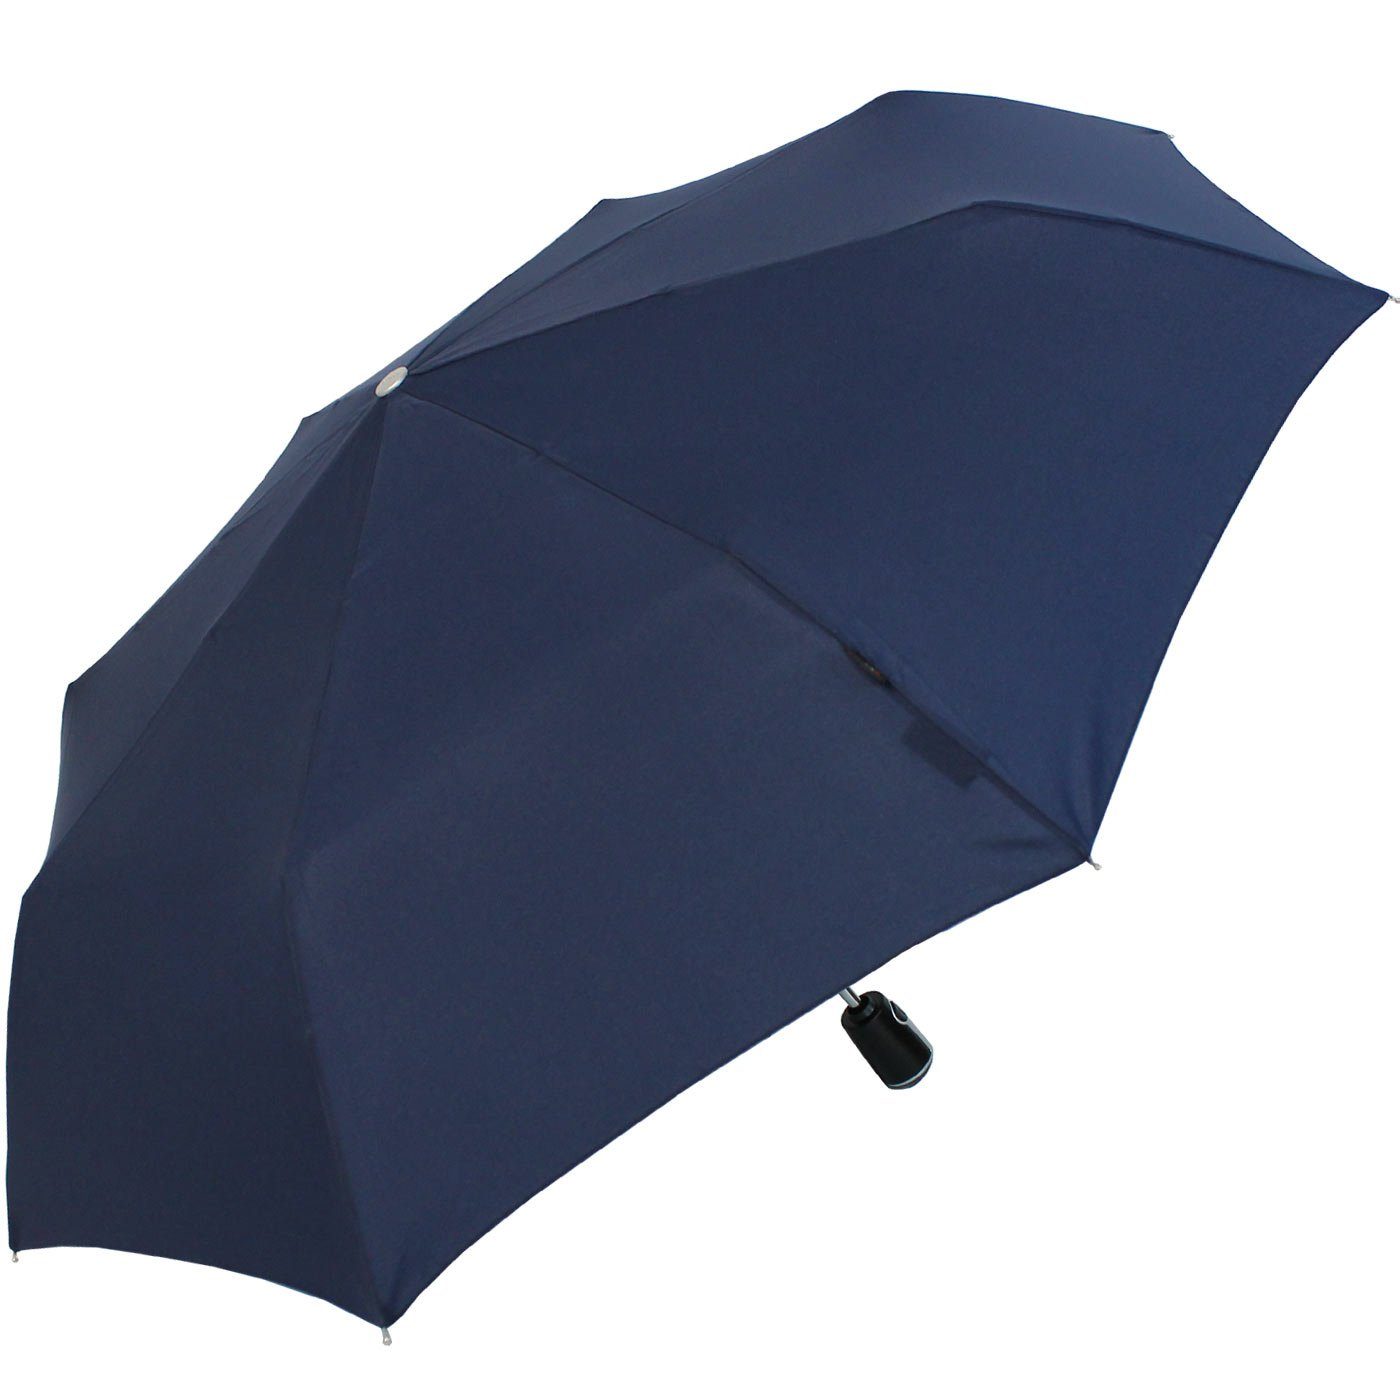 Auf-Zu-Automatik, navy-blau mit Large Knirps® Duomatic große, stabile Taschenregenschirm der Begleiter